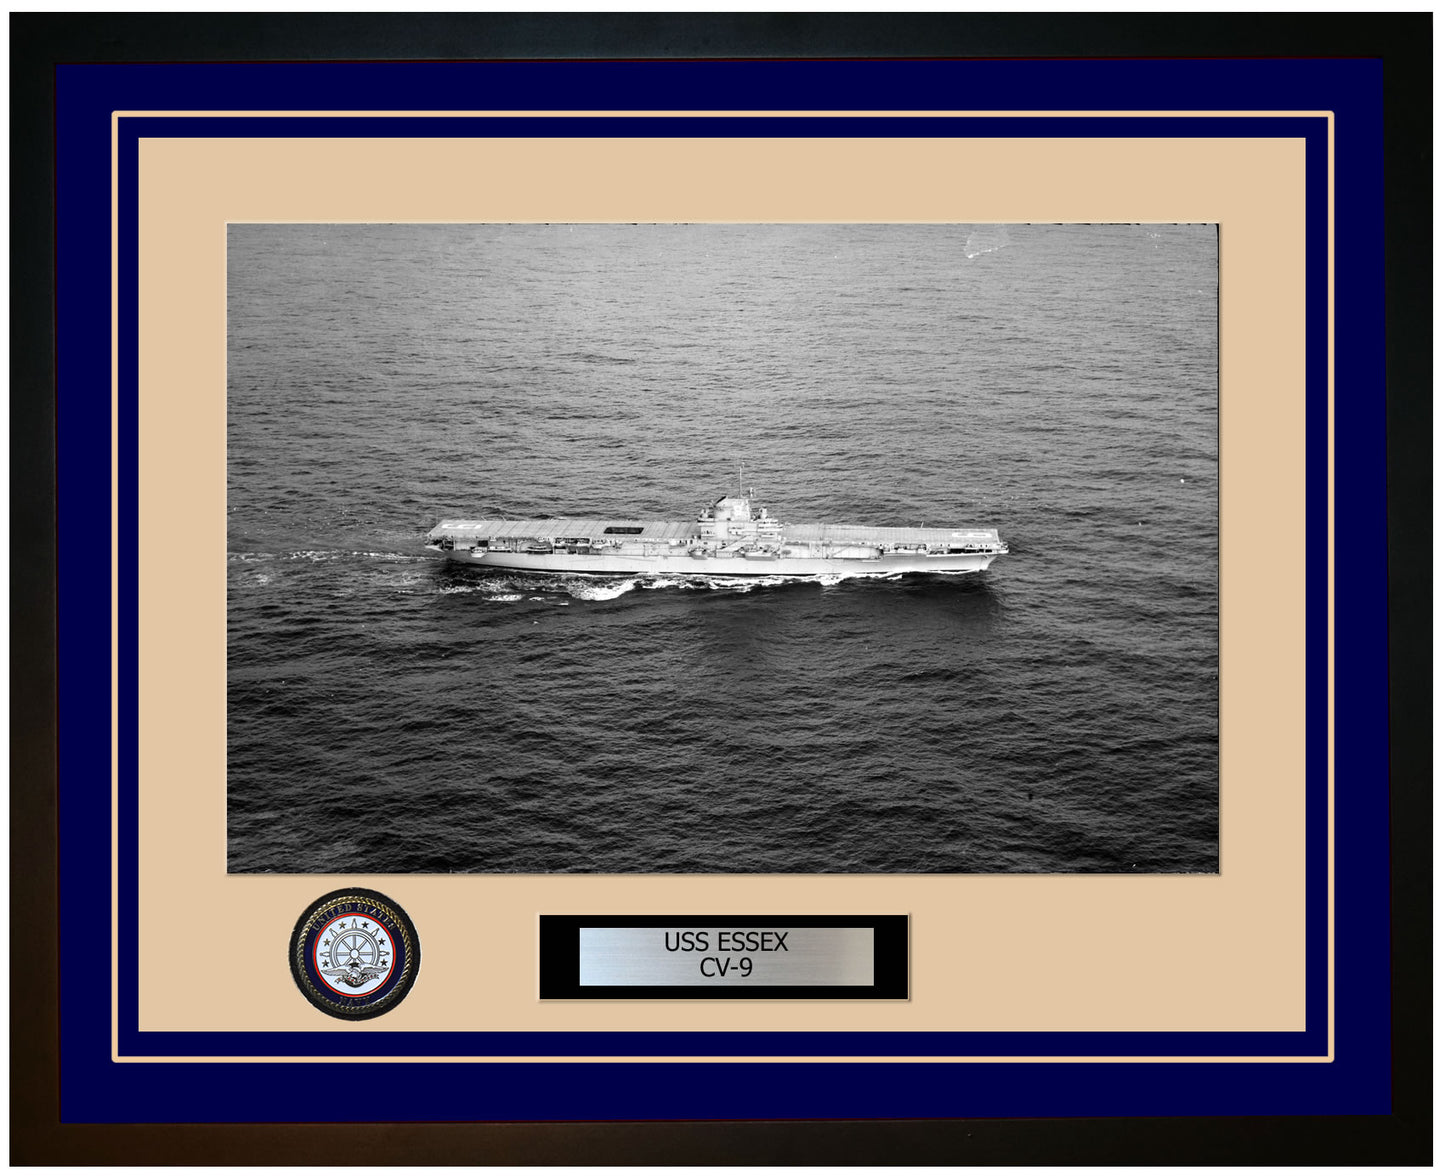 USS ESSEX CV-9 Framed Navy Ship Photo Blue